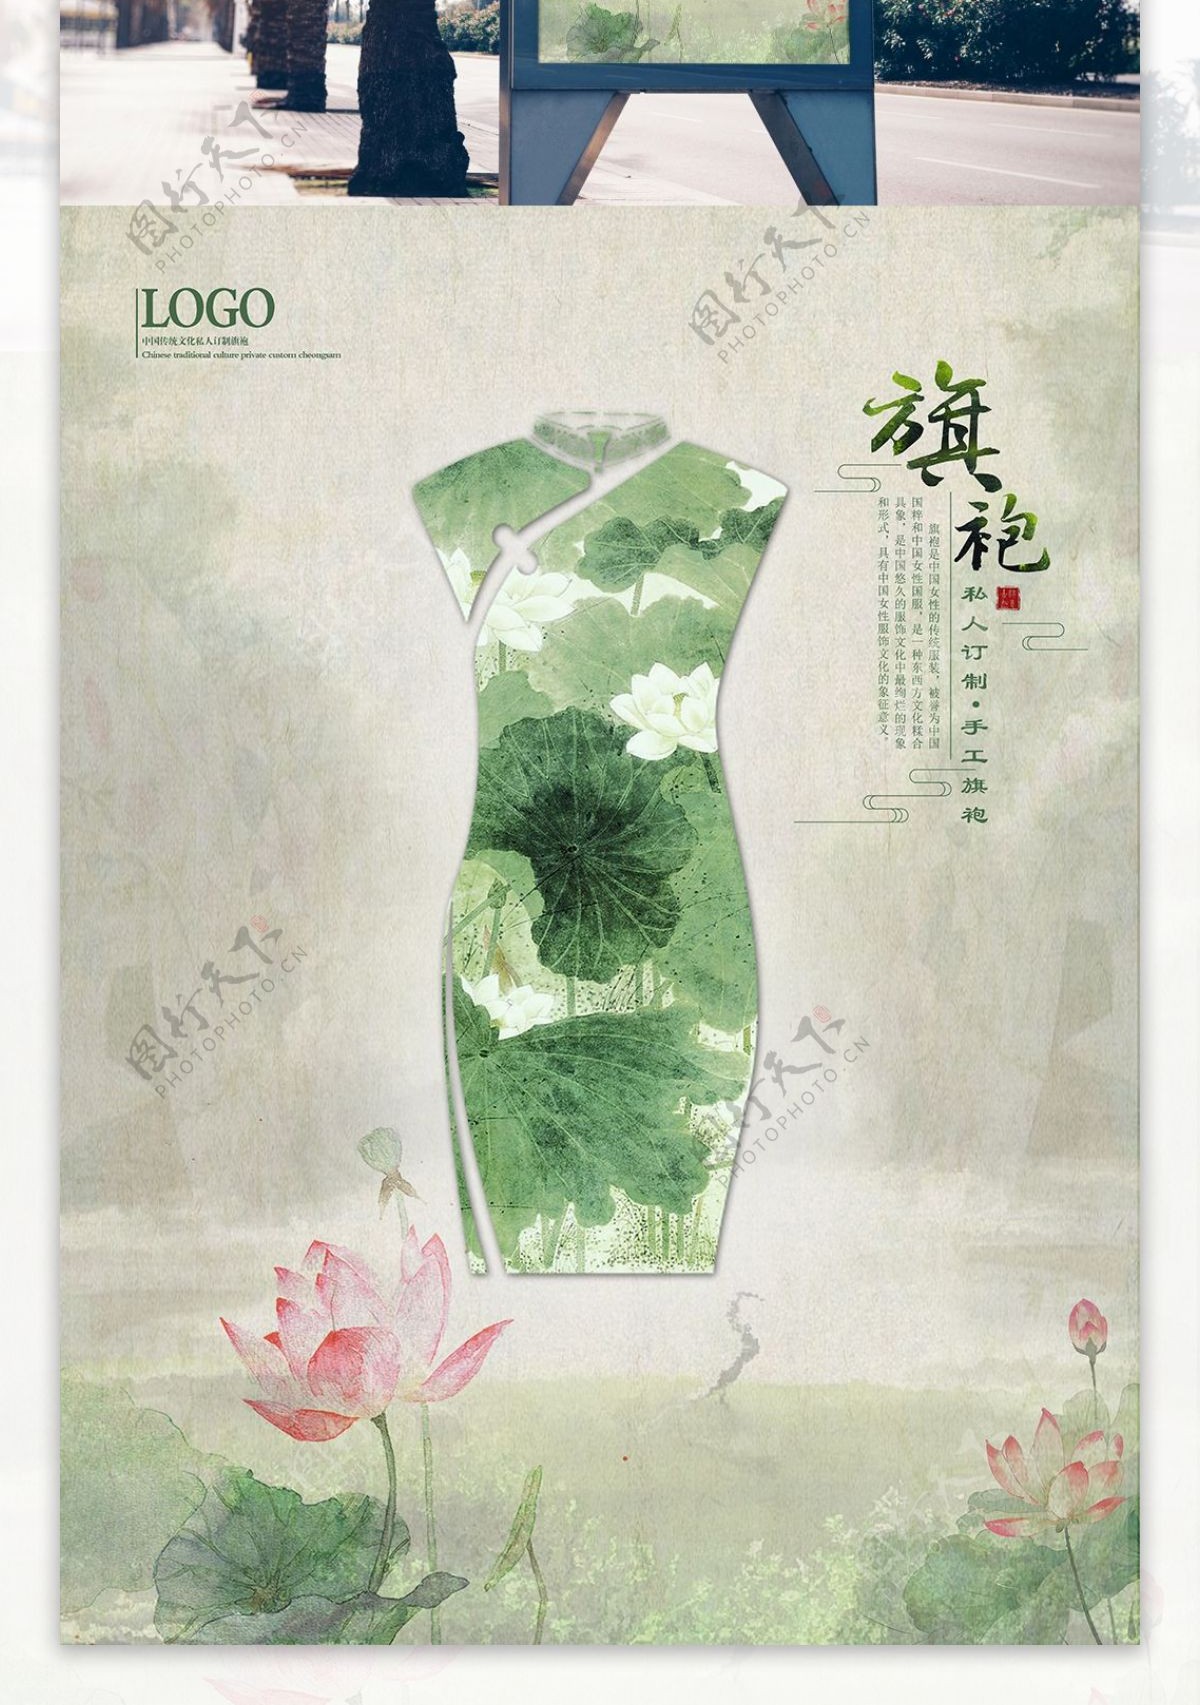 中国风旗袍高端服饰定制宣传海报